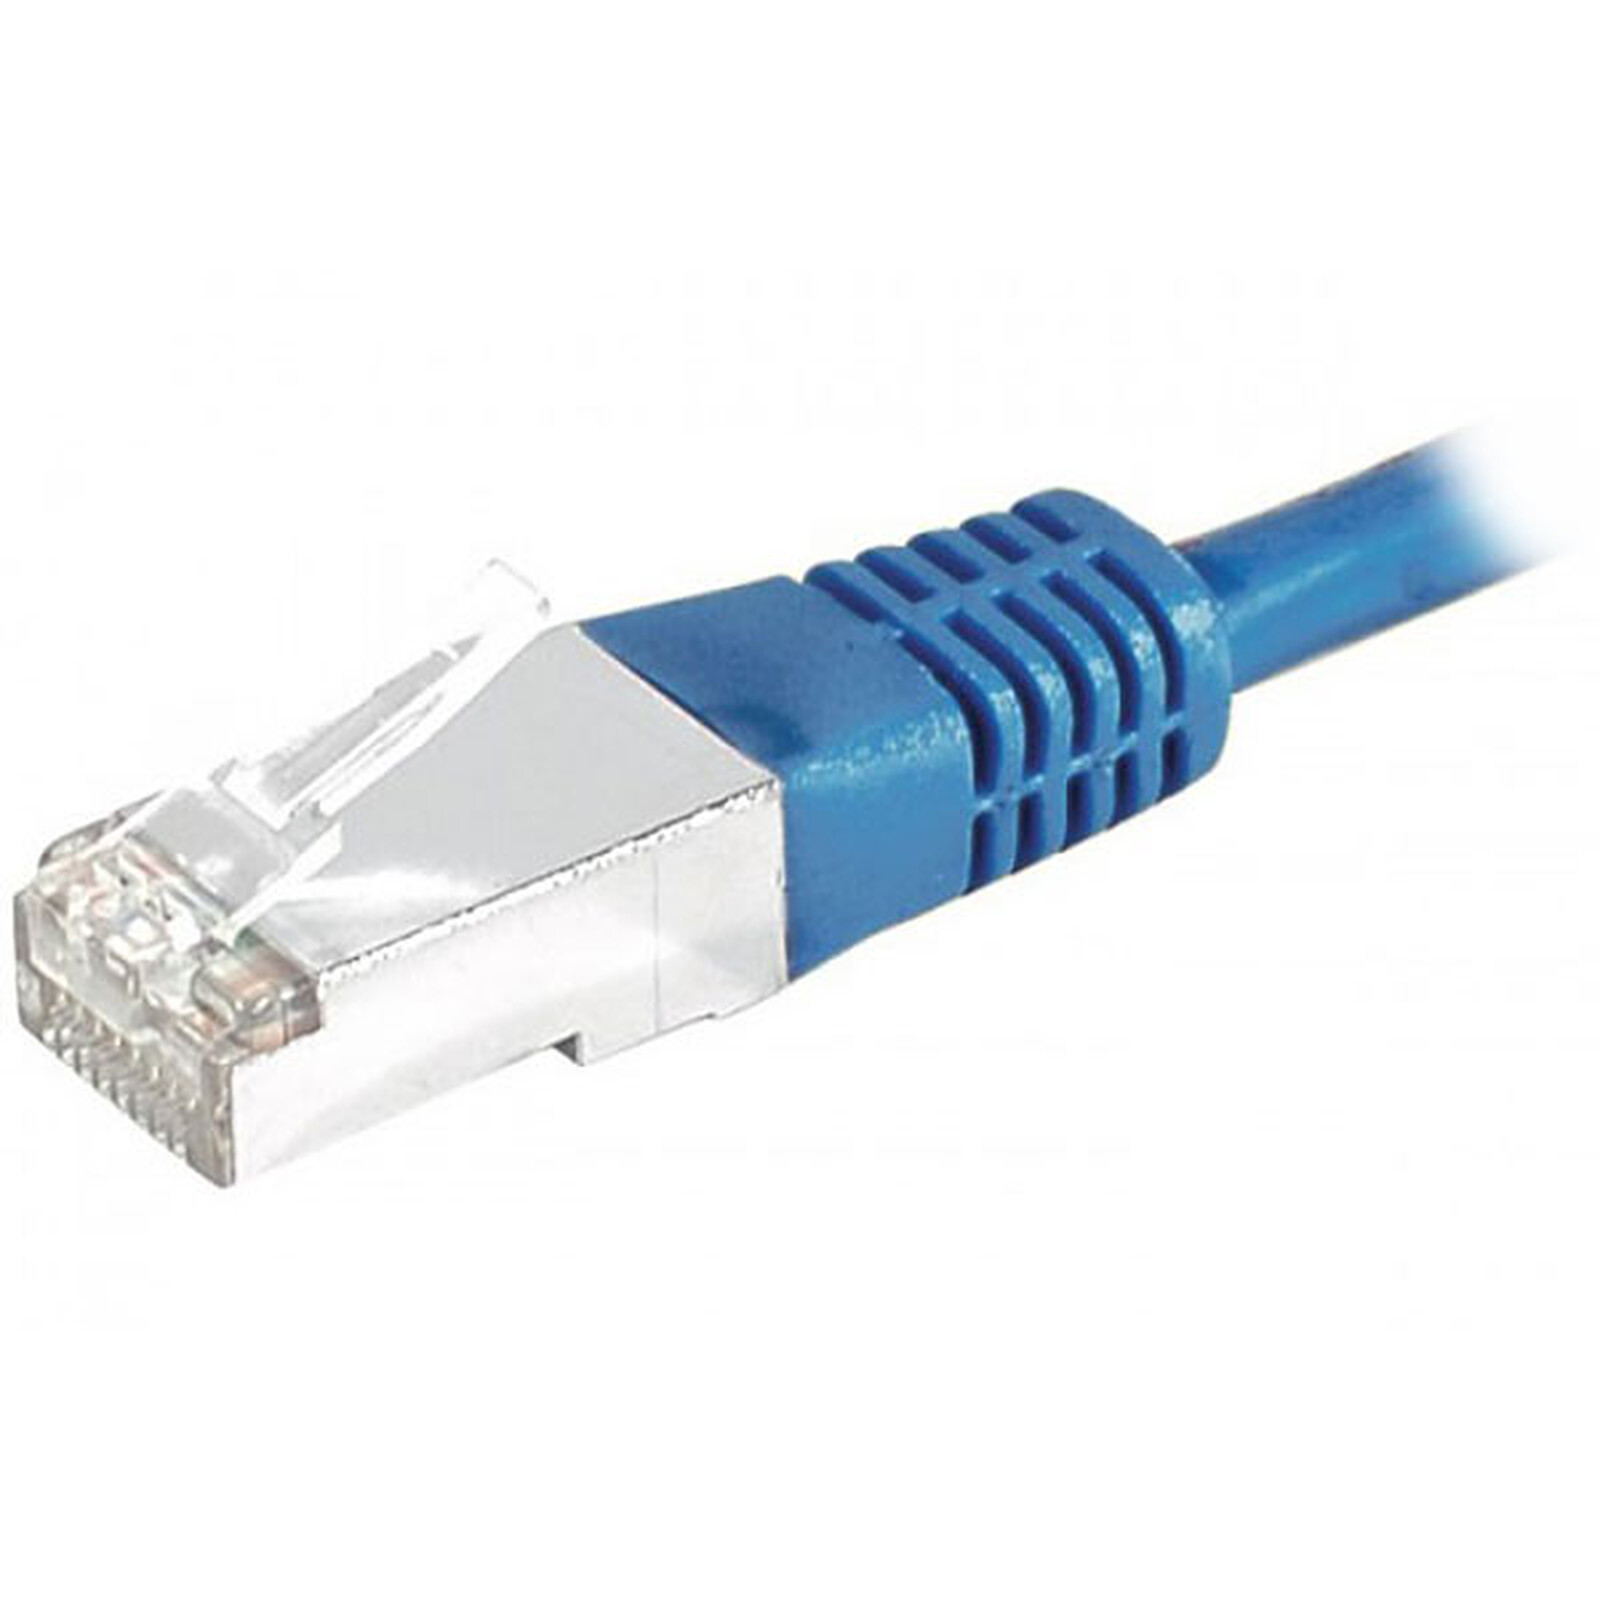 Câble RJ45 catégorie 6 S/FTP 0.5 m (Bleu) - Câble RJ45 - Garantie 3 ans LDLC